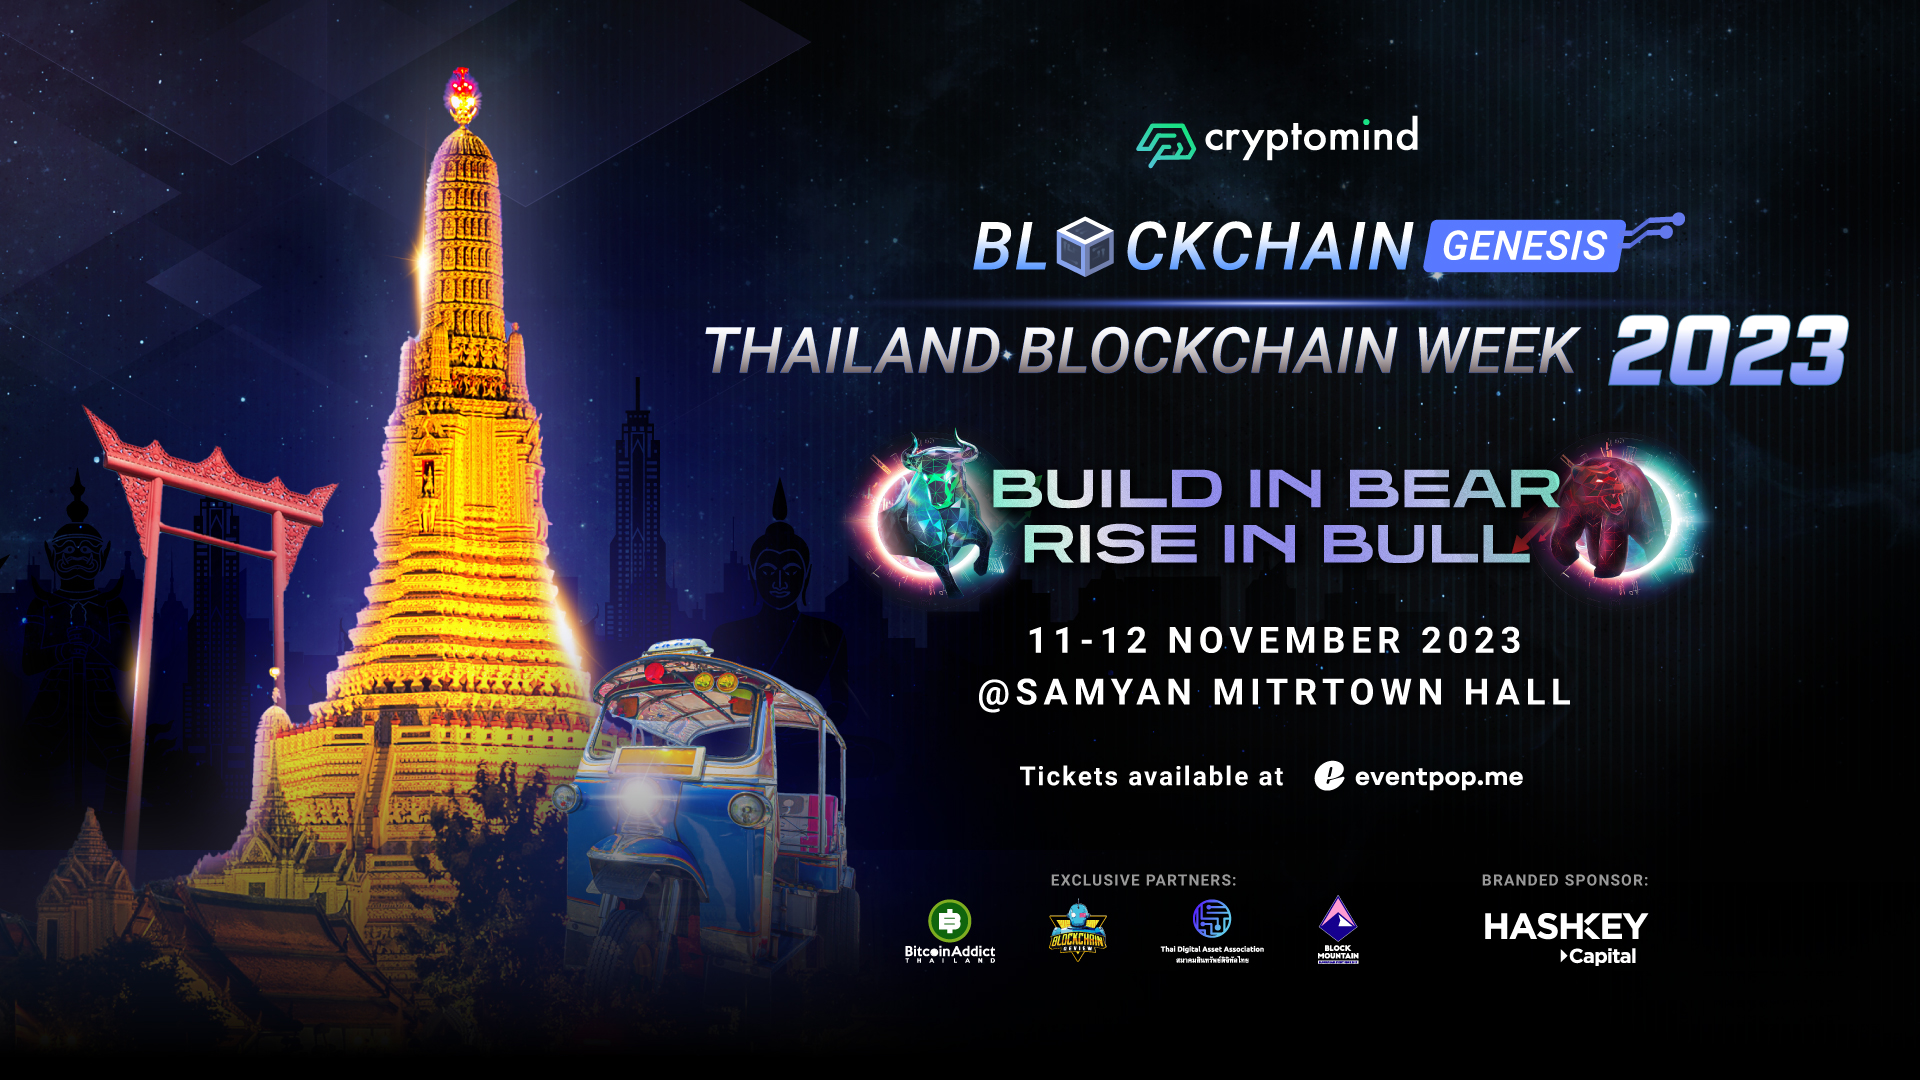 30% OFF tickets for Thailand Blockchain Week 2023